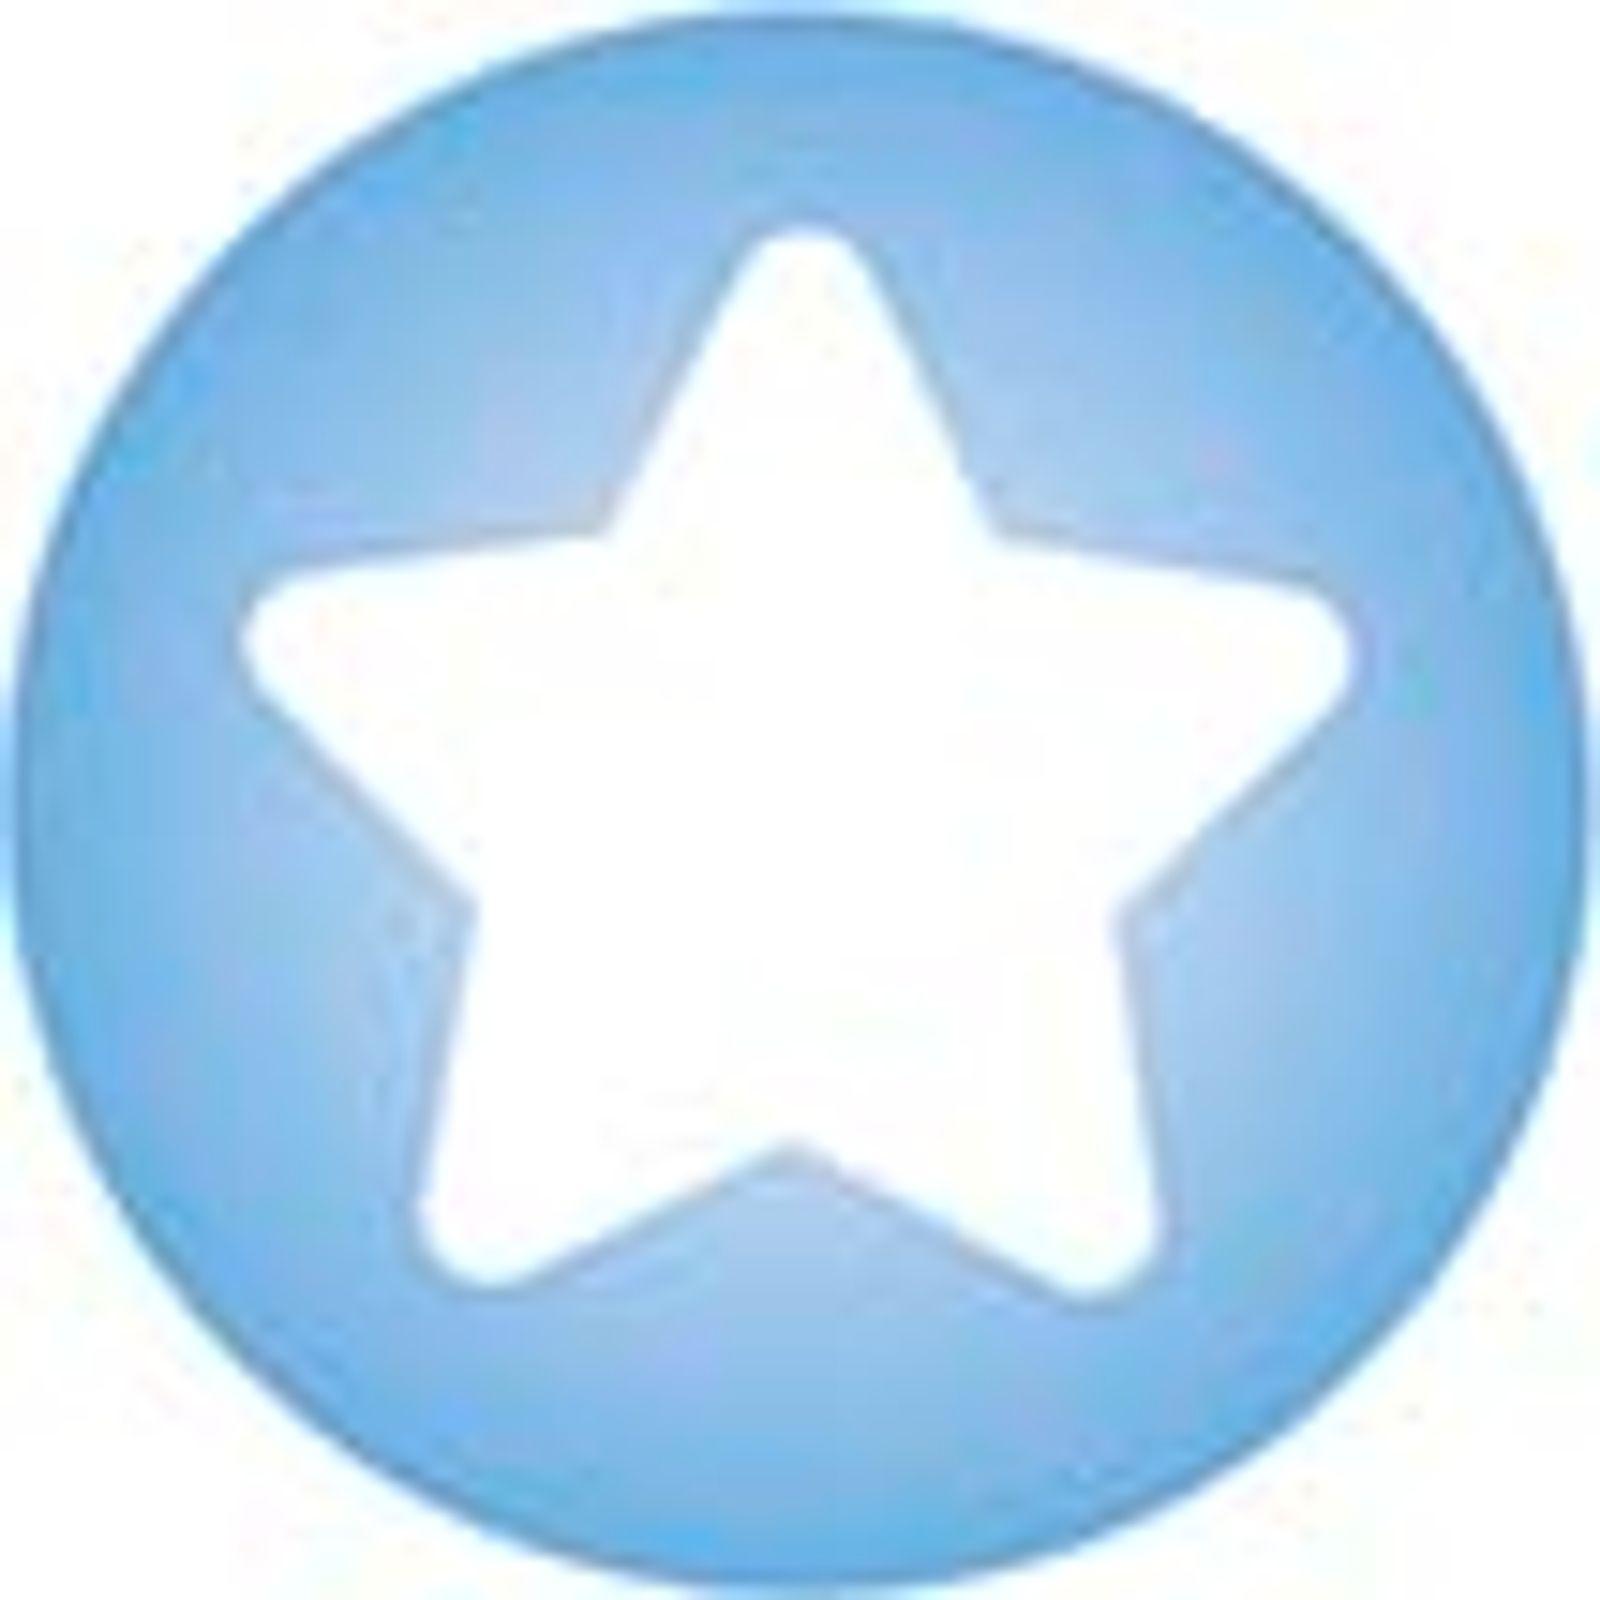 Clickhalbperle blau mit weißem Stern